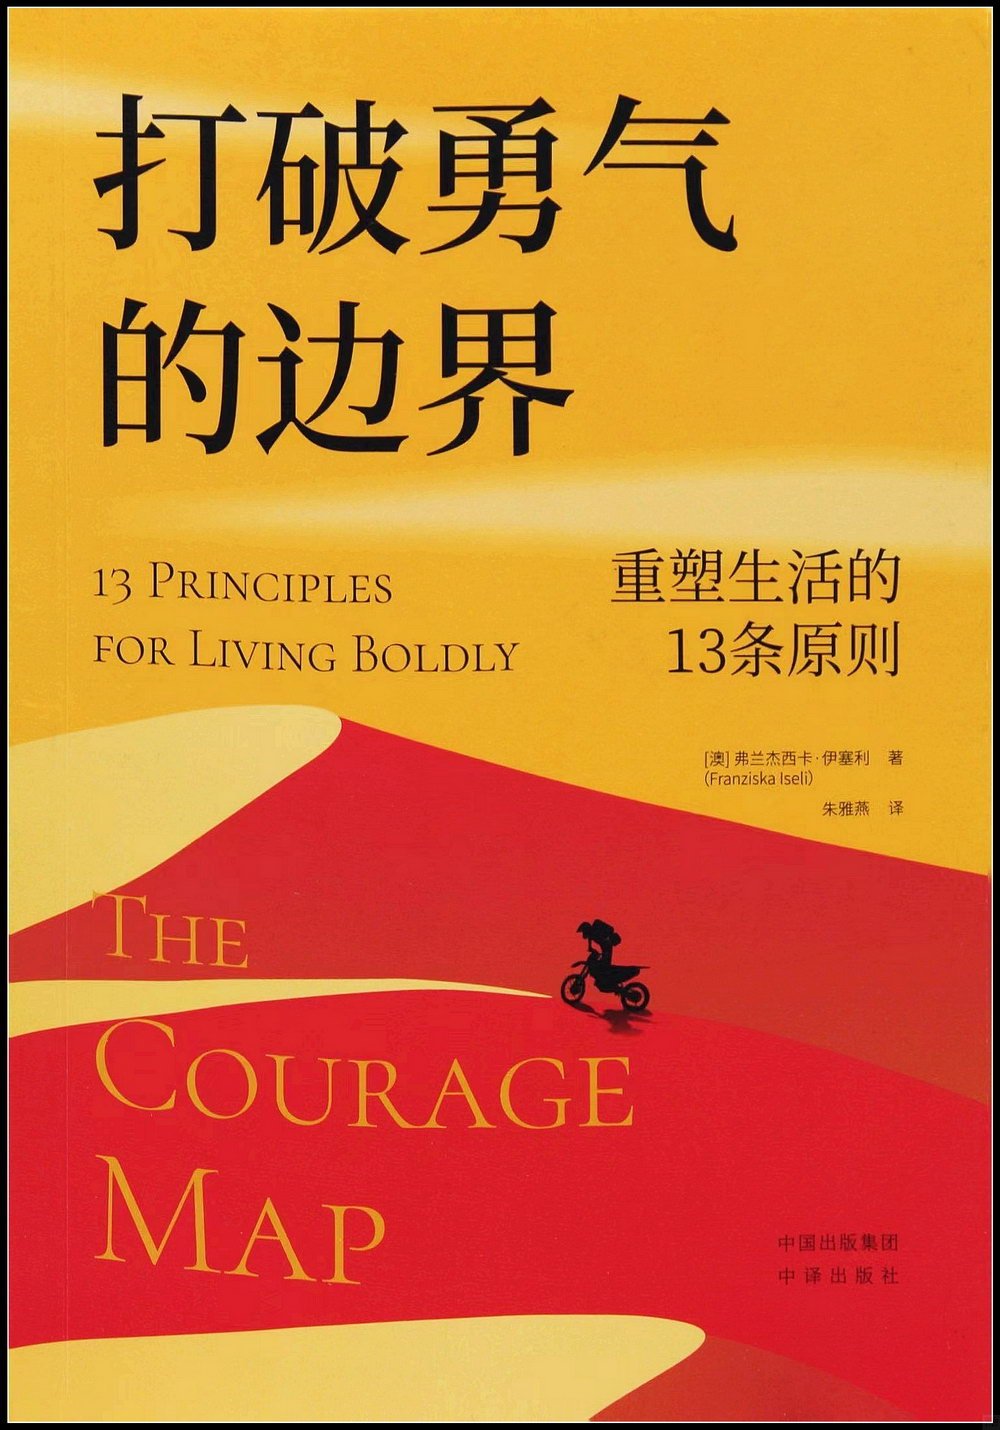 打破勇氣的邊界：重塑生活的13條原則